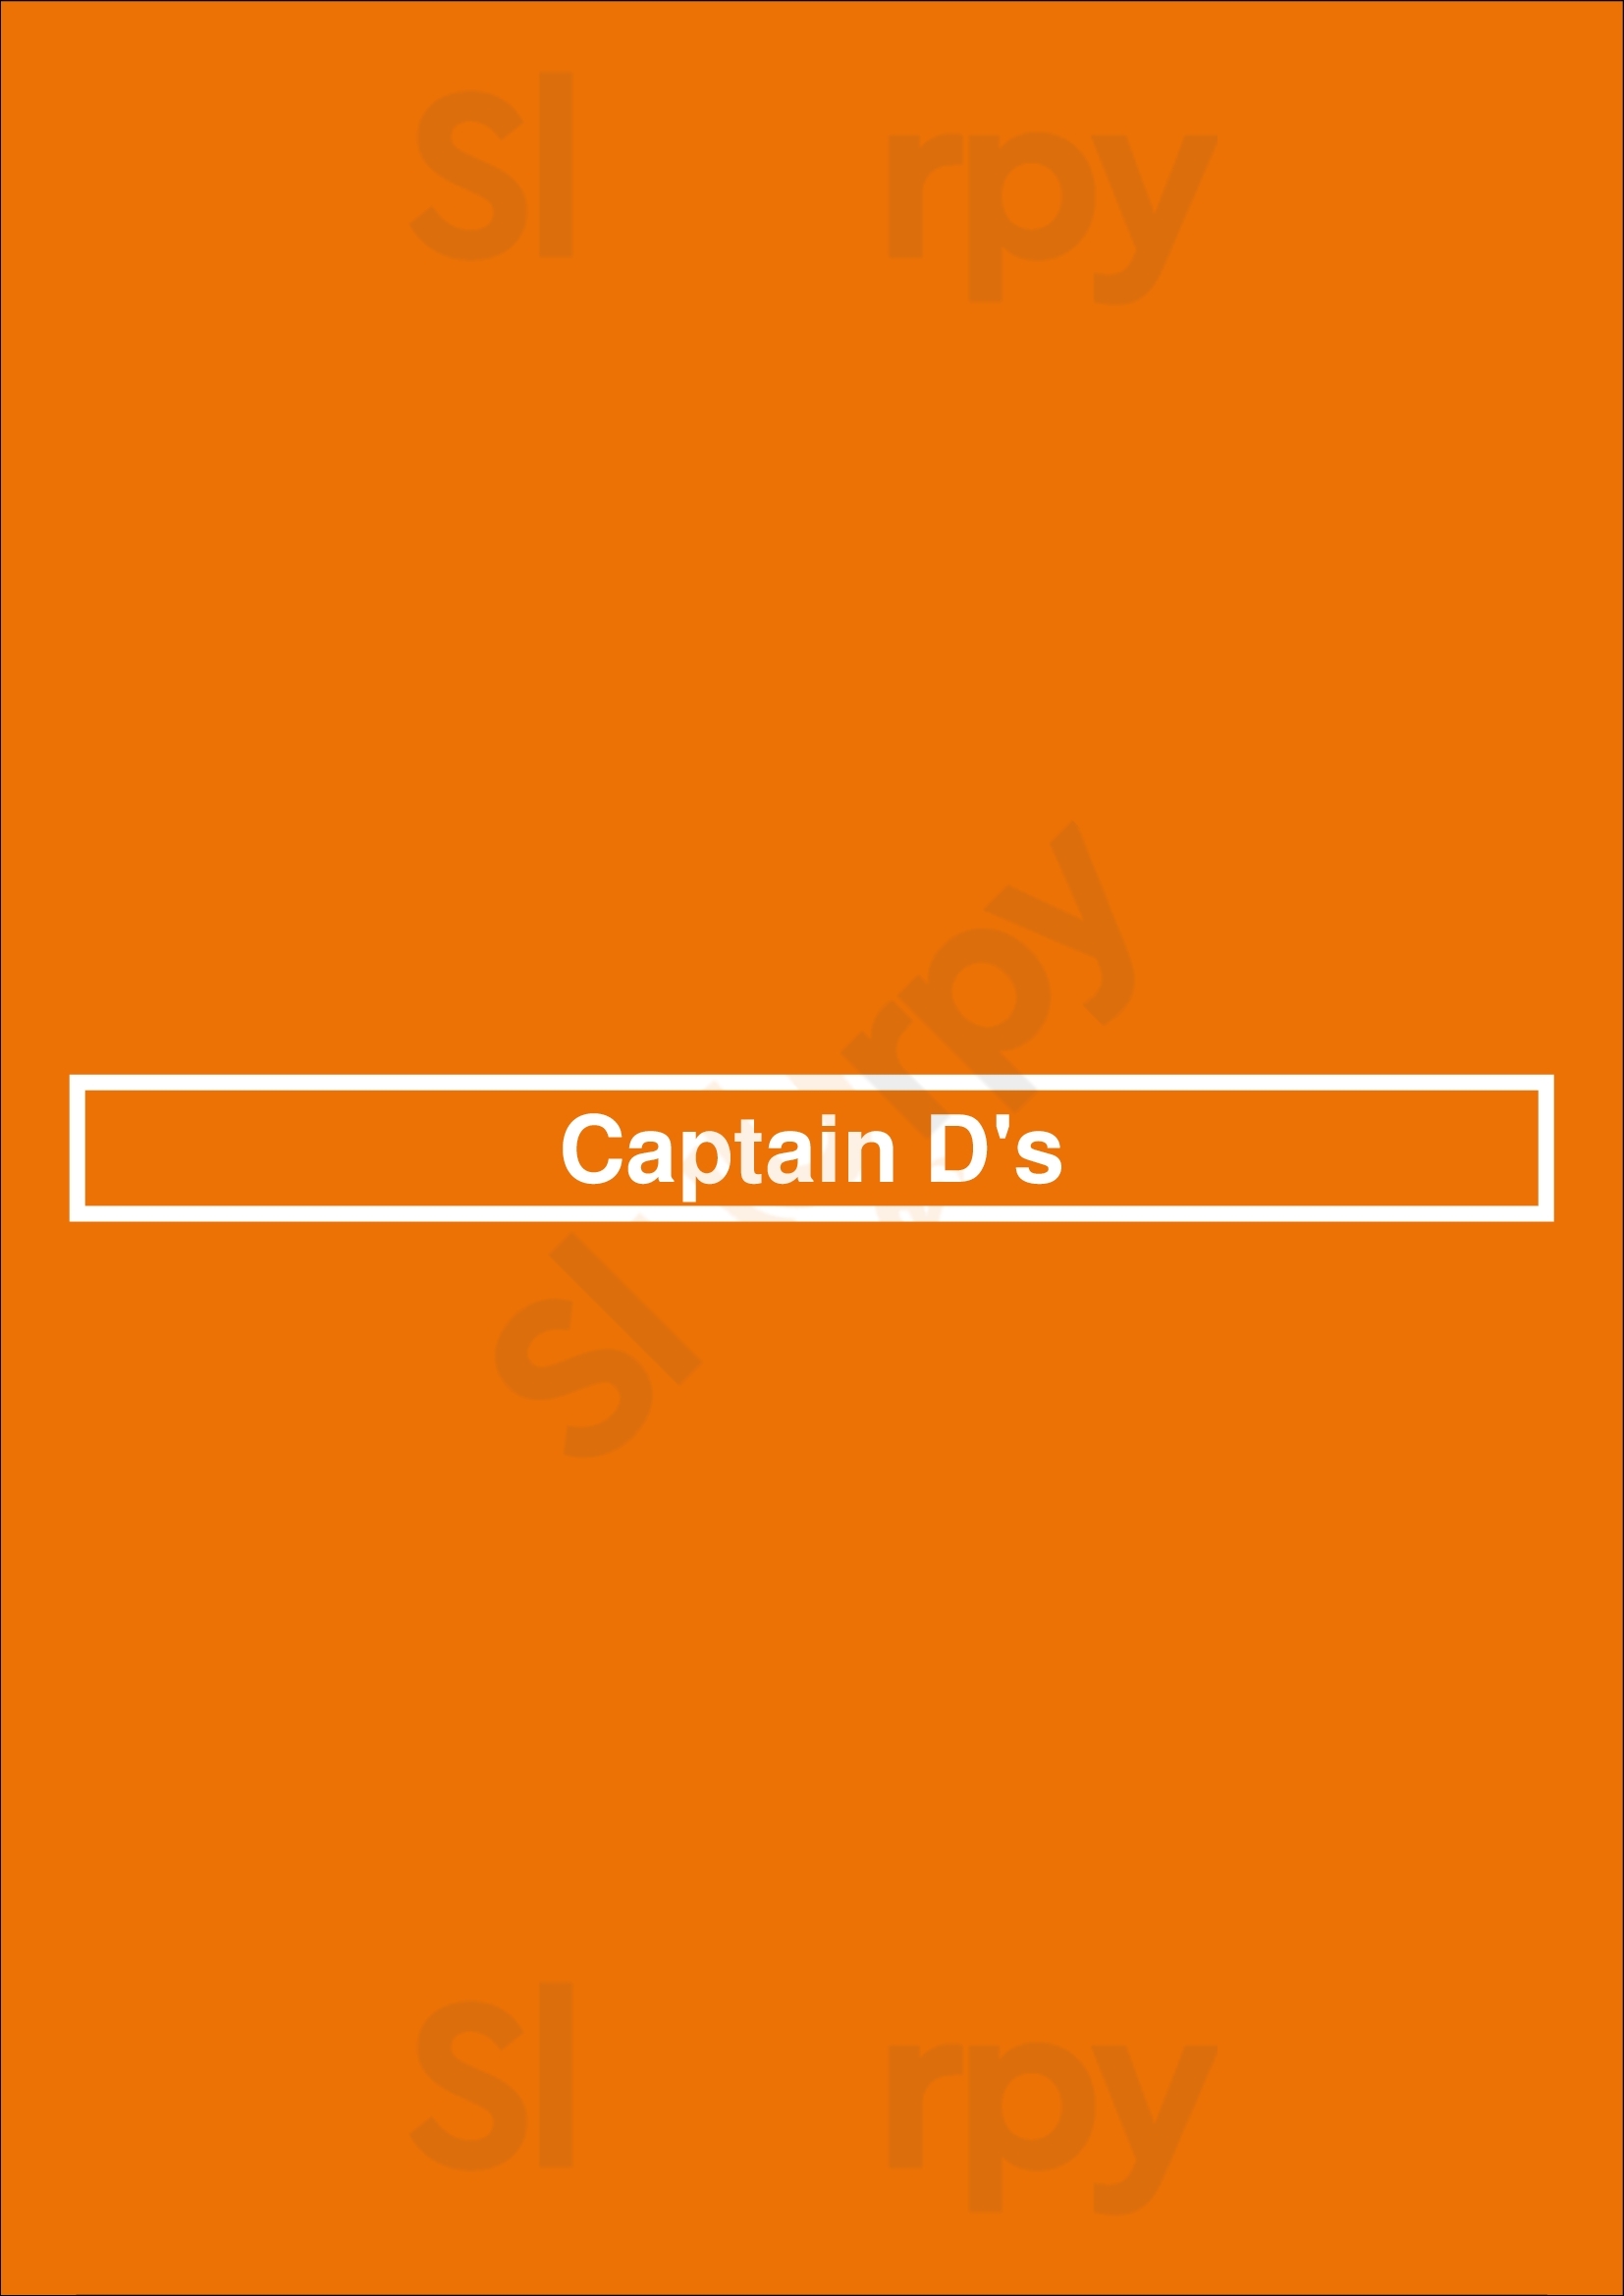 Captain D's Jacksonville Menu - 1